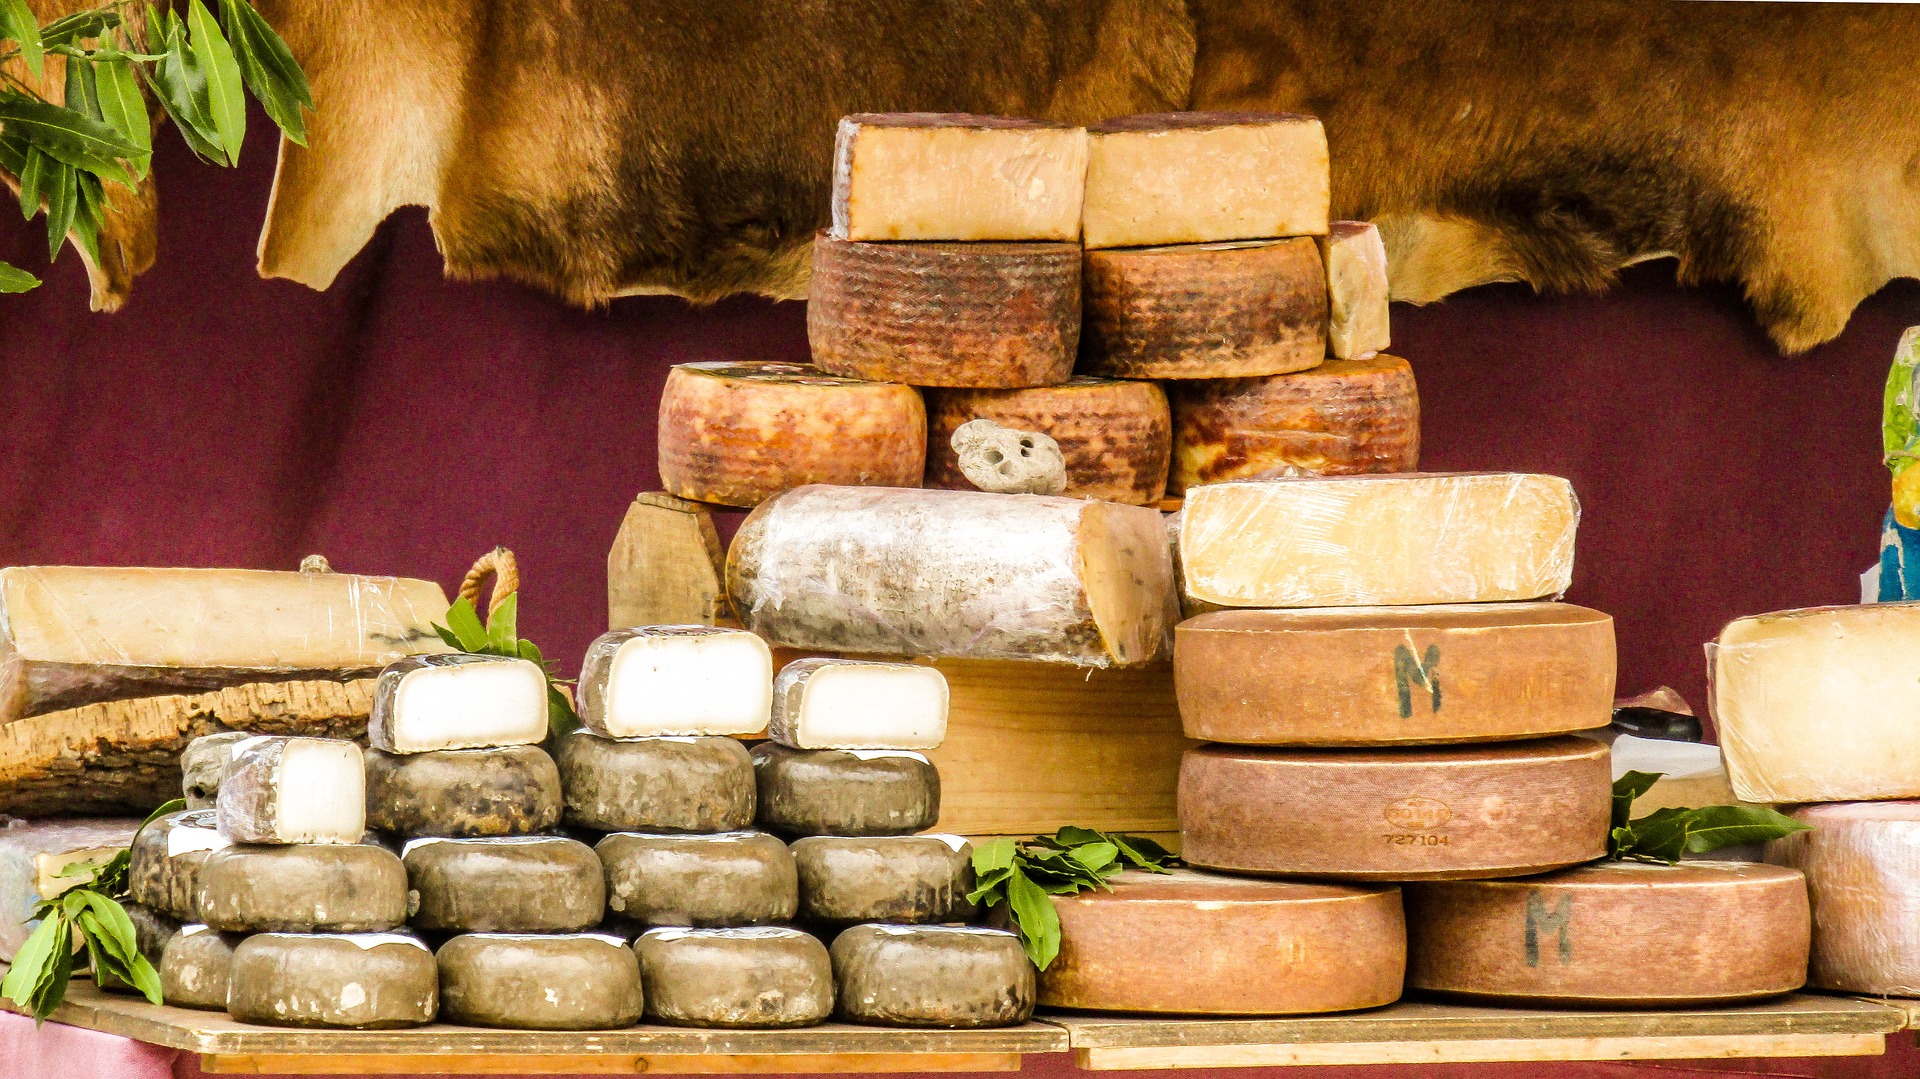 Gorgonzola : fromage italien, prix, comment le cuisiner